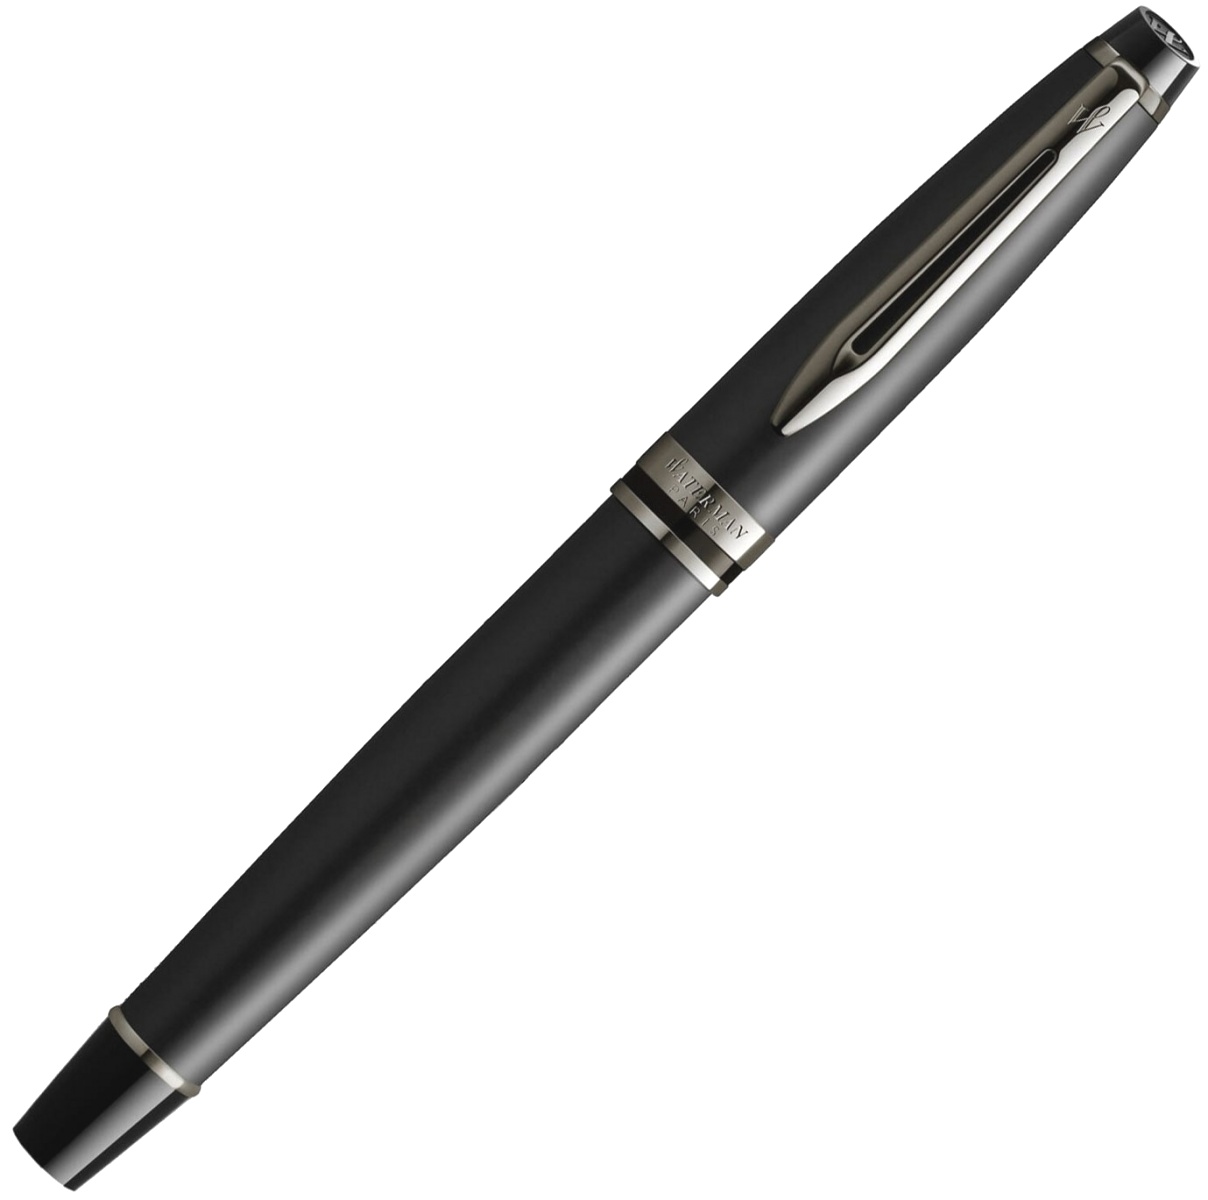  Ручка перьевая Waterman Expert DeLuxe, Metallic Black RT (Перо F), фото 2